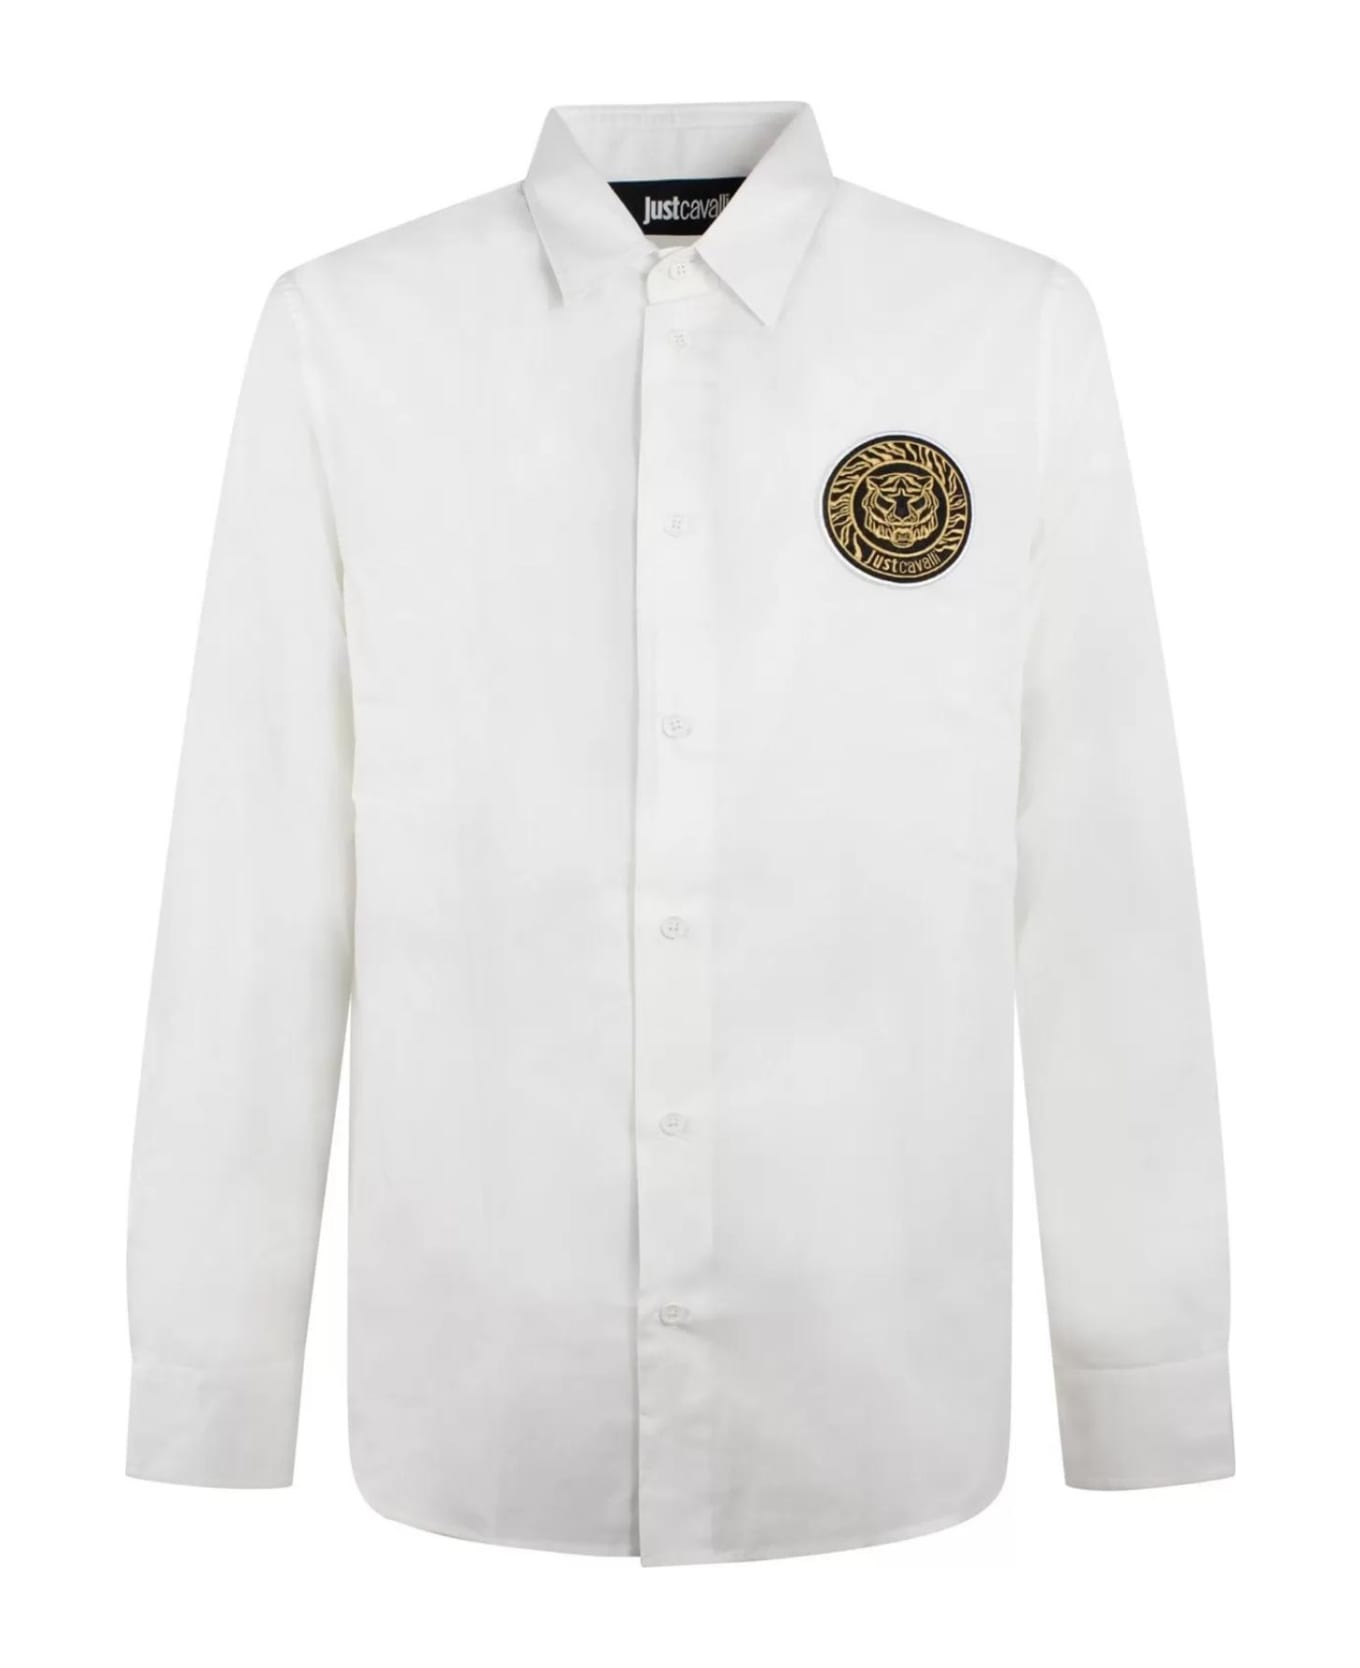 Just Cavalli Shirts White - White シャツ